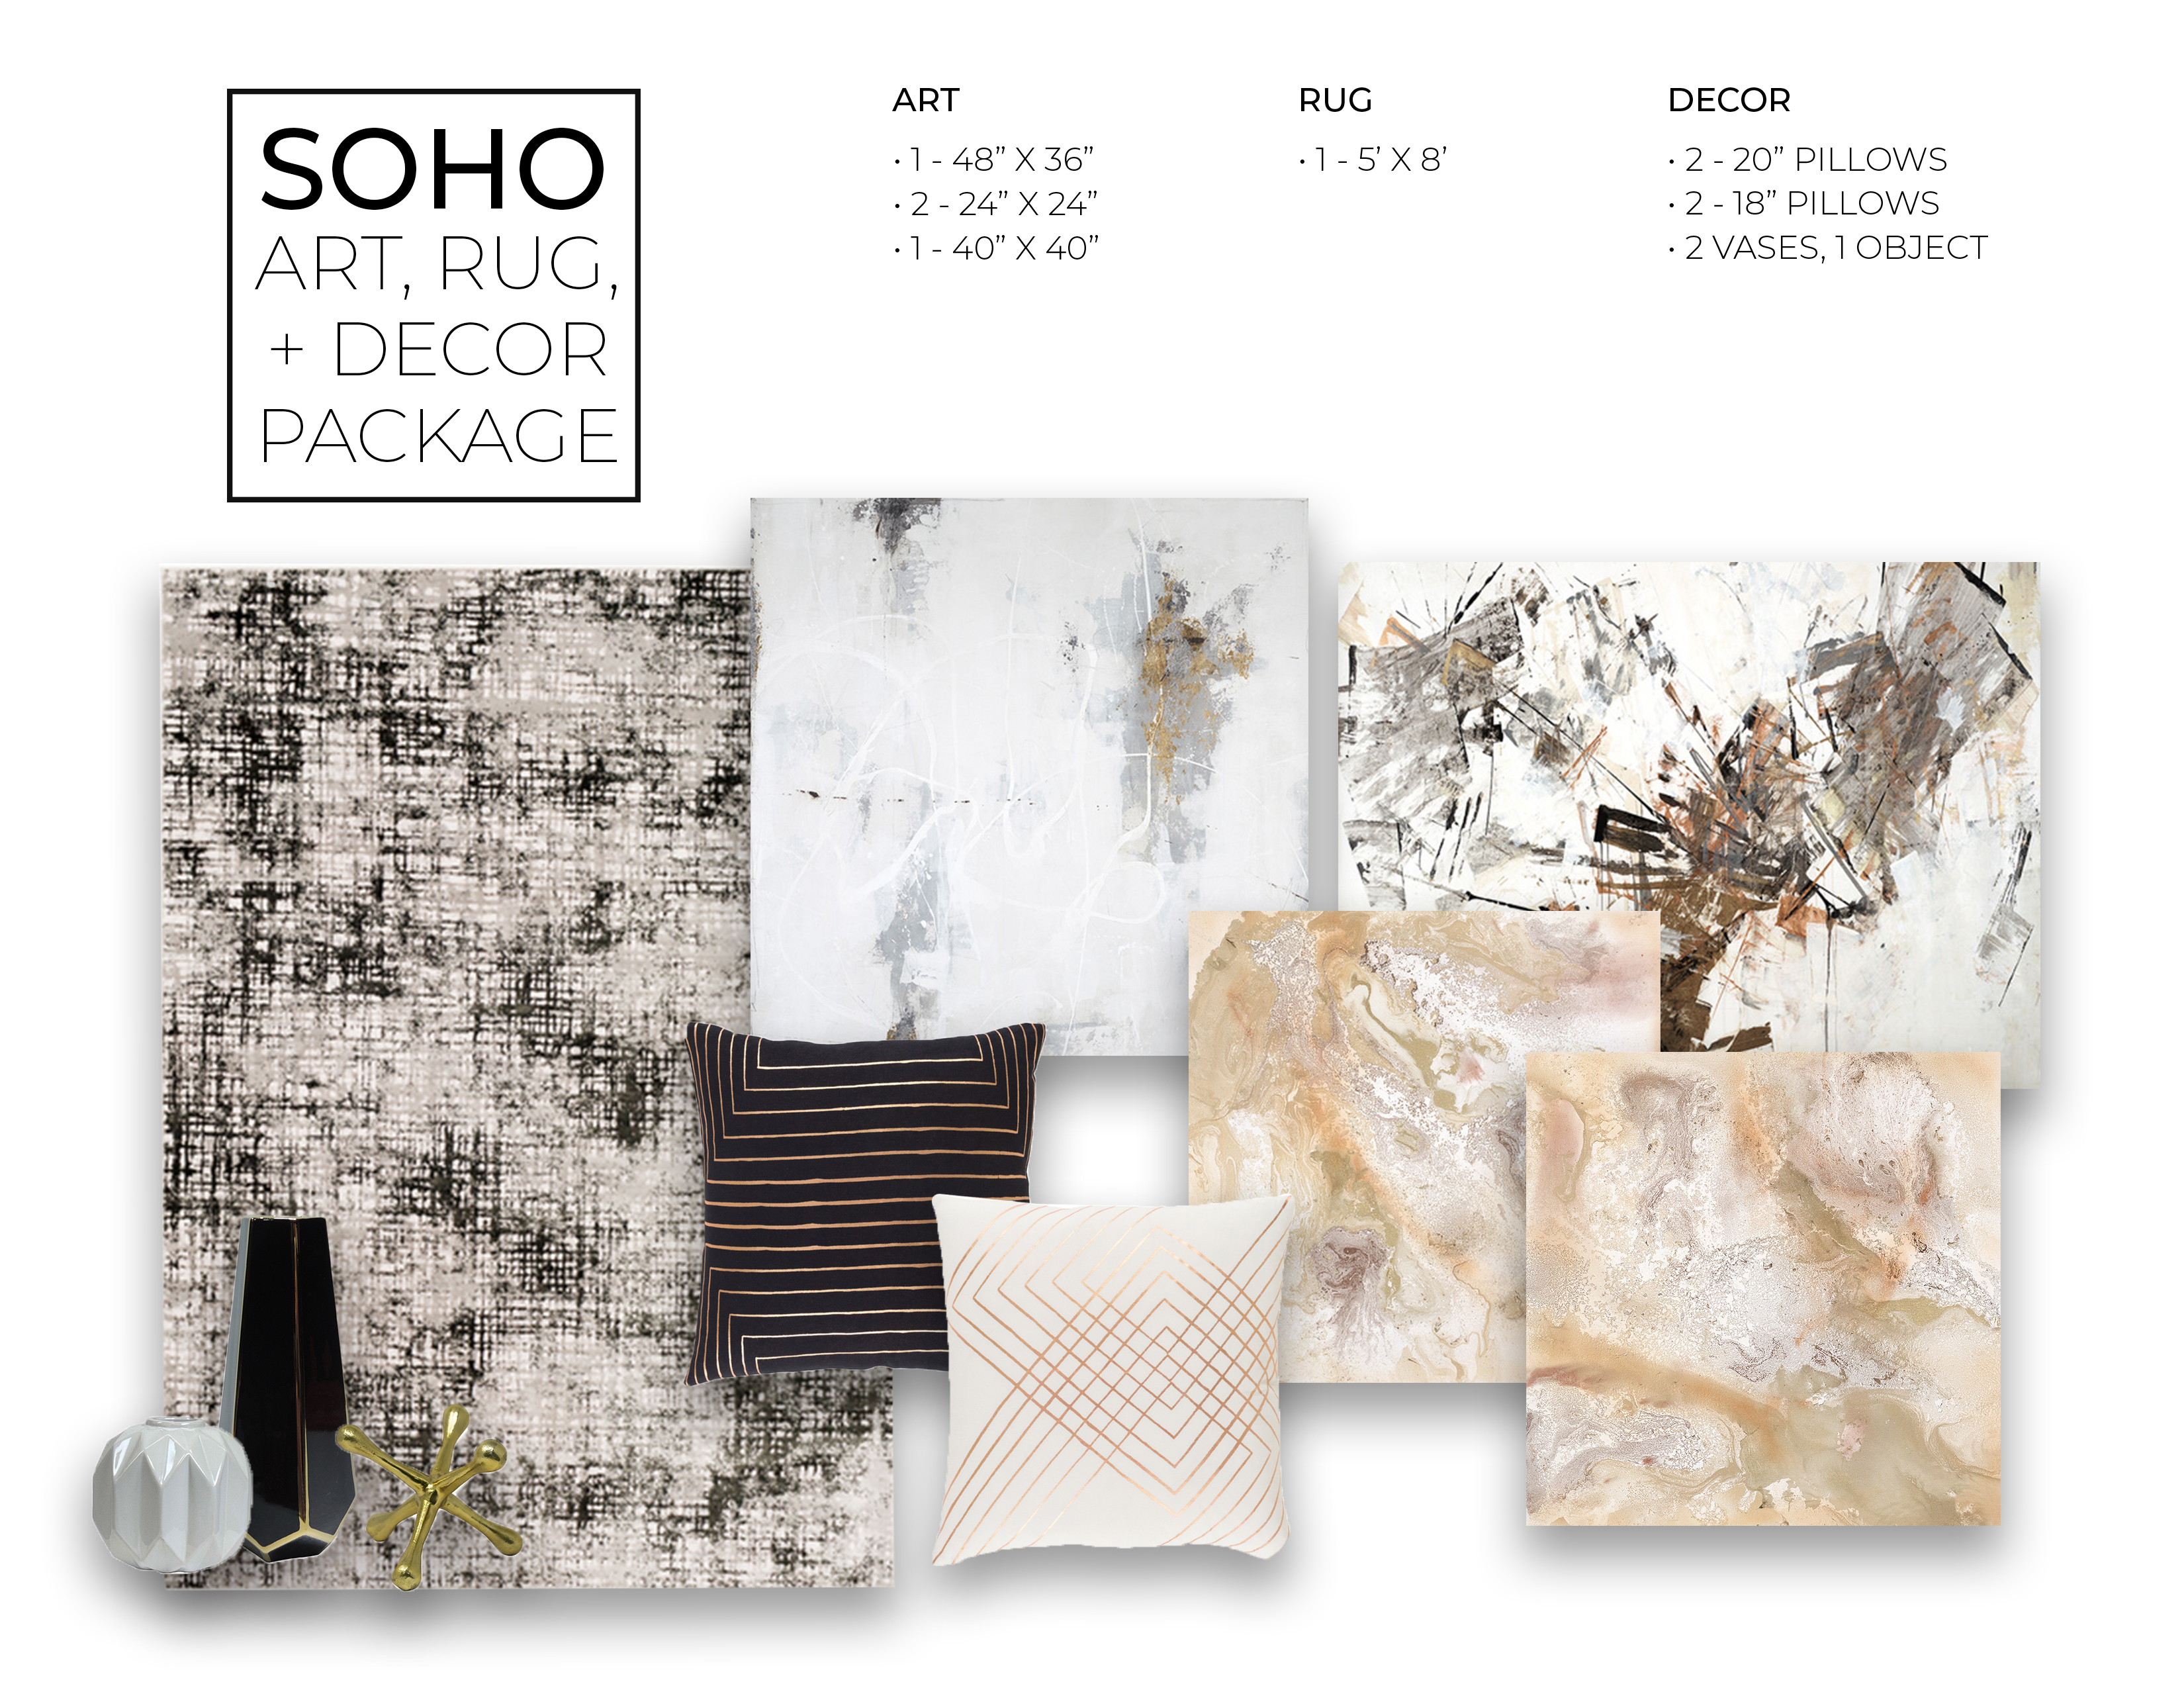 Soho Art, Rug, + Decor Package